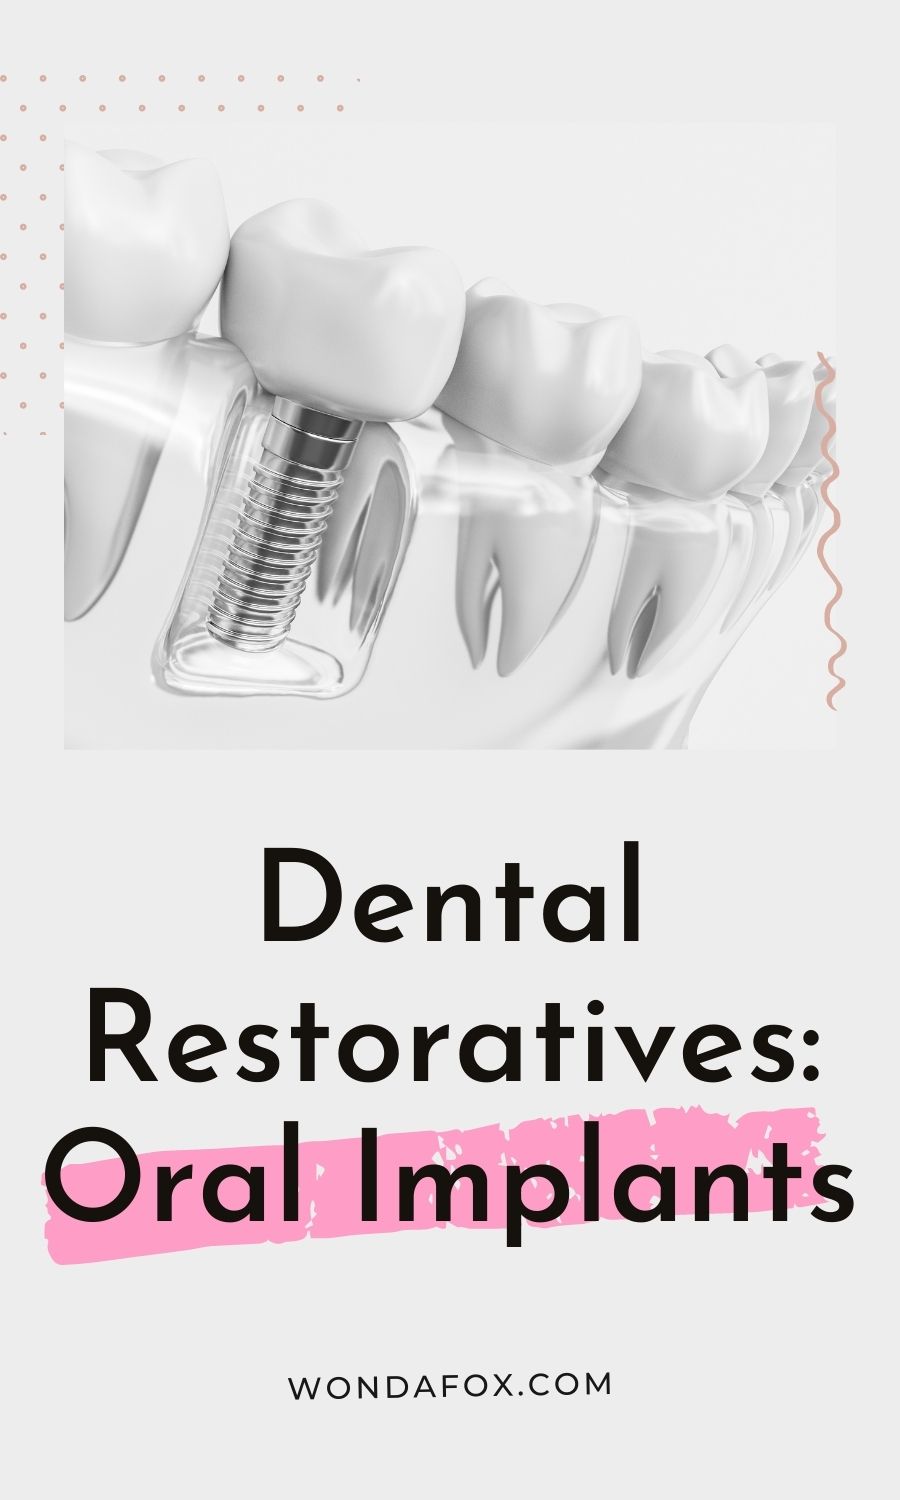 Dental Restoratives: Oral Implants  